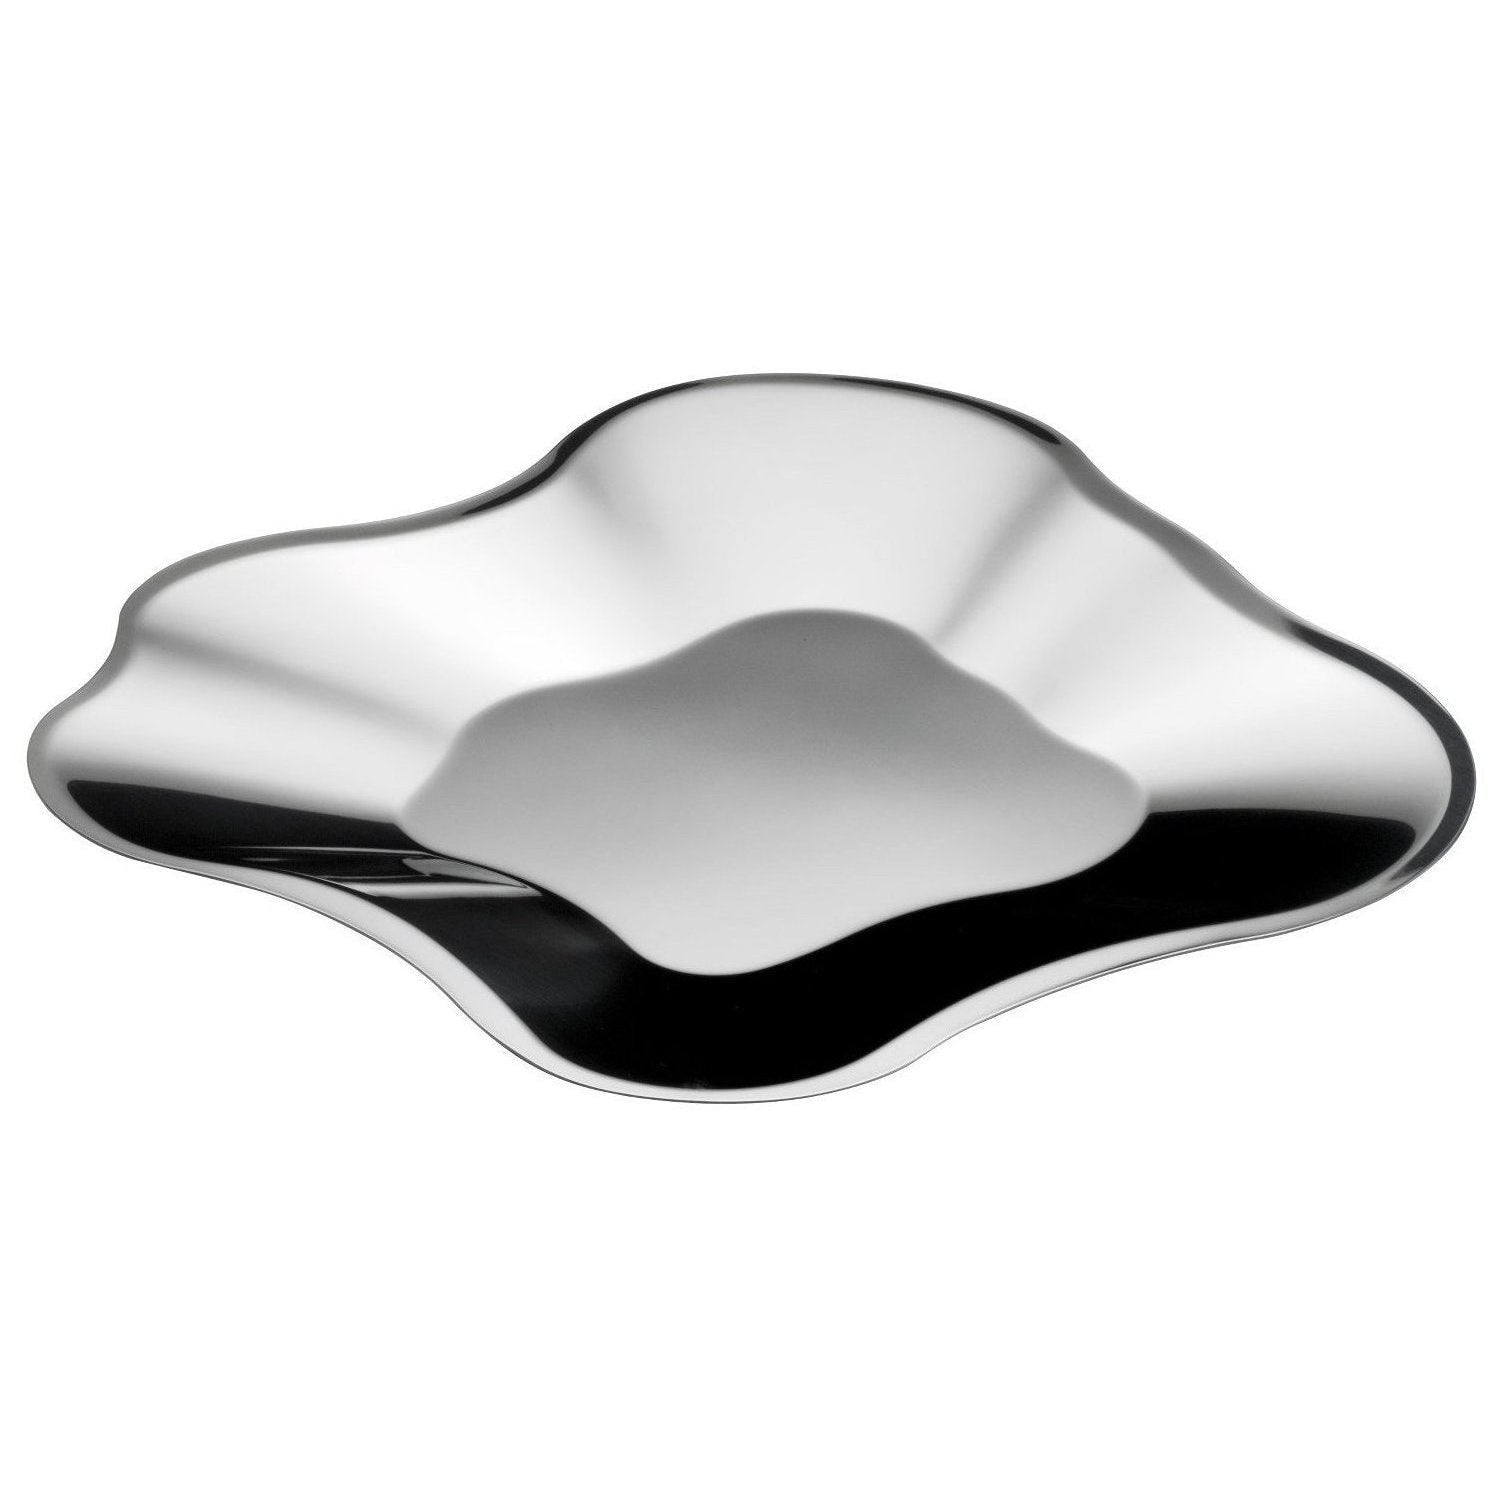 Iittala Alvar Aalto Bowl in acciaio inossidabile, 50,4 cm